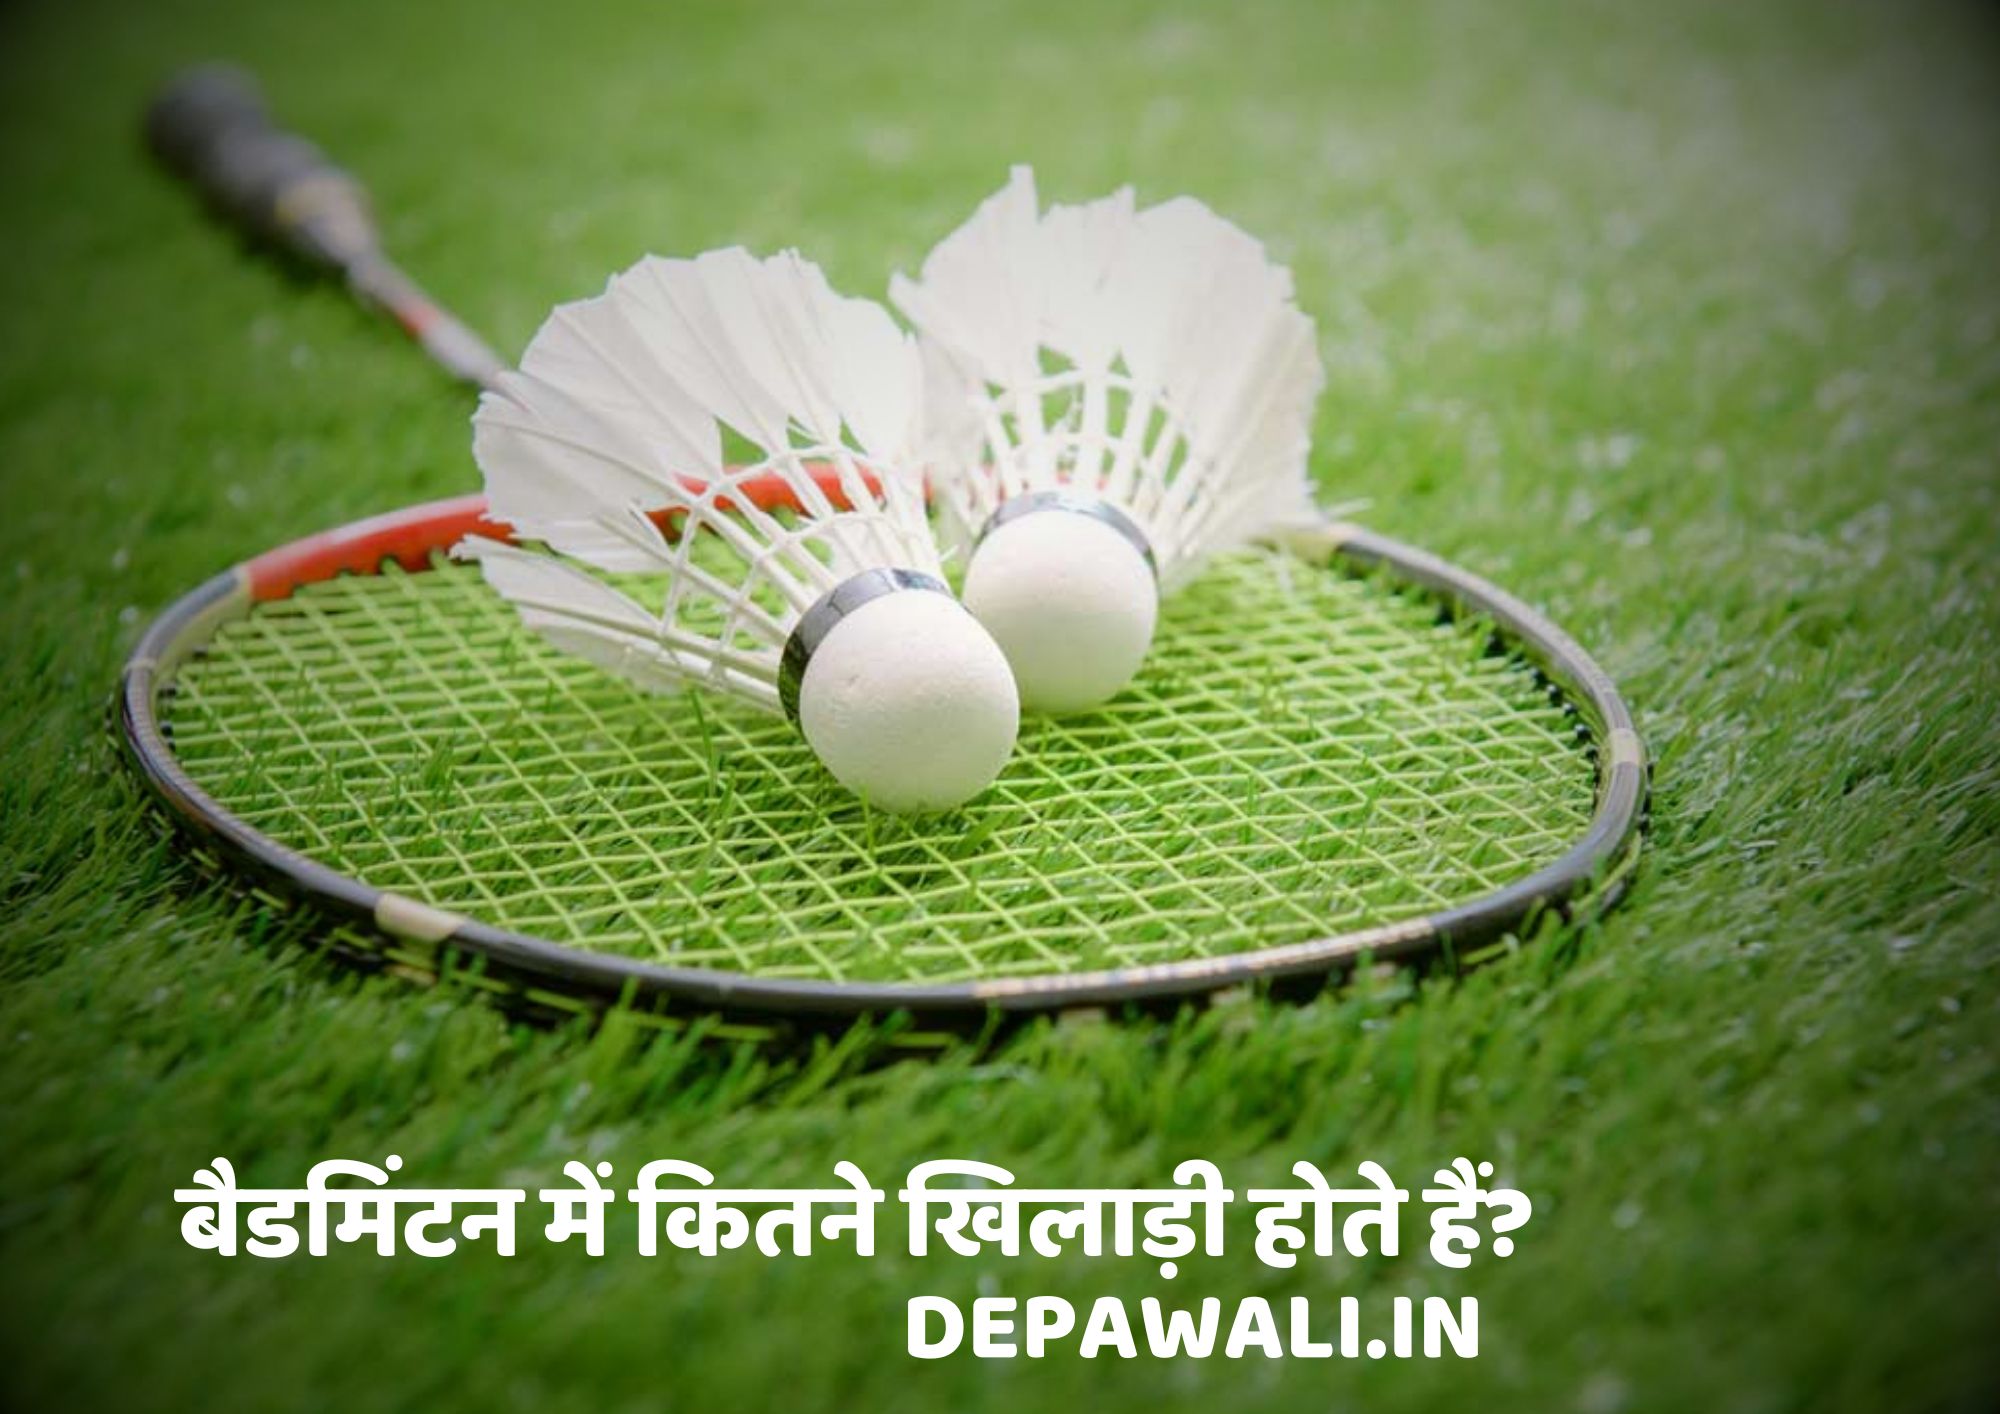 बैडमिंटन में कितने खिलाड़ी होते हैं (Badminton Me Kitne Player Hote Hain) - Badminton Mein Kitne Khiladi Hote Hain